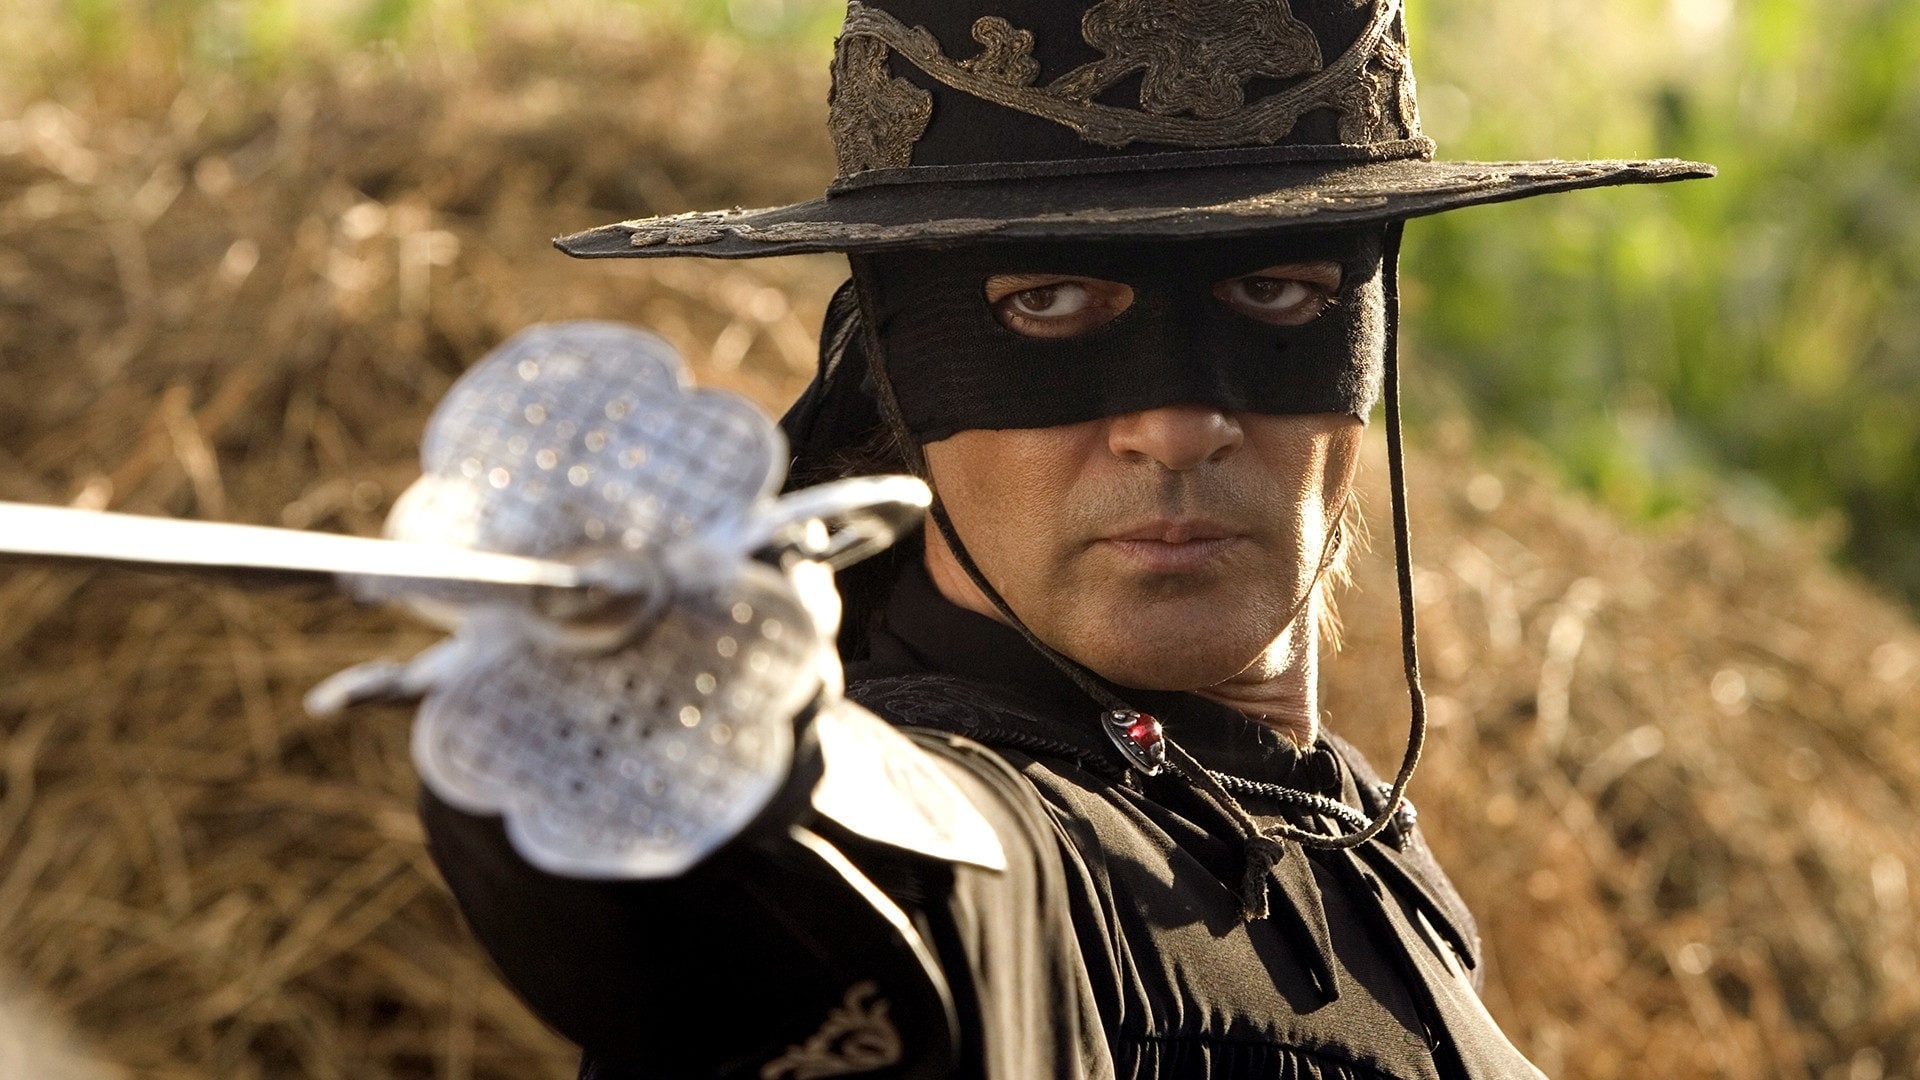 The Legend of Zorro: Antonio Banderas reprised the role of Don Alejandro de la Vega. 1920x1080 Full HD Wallpaper.